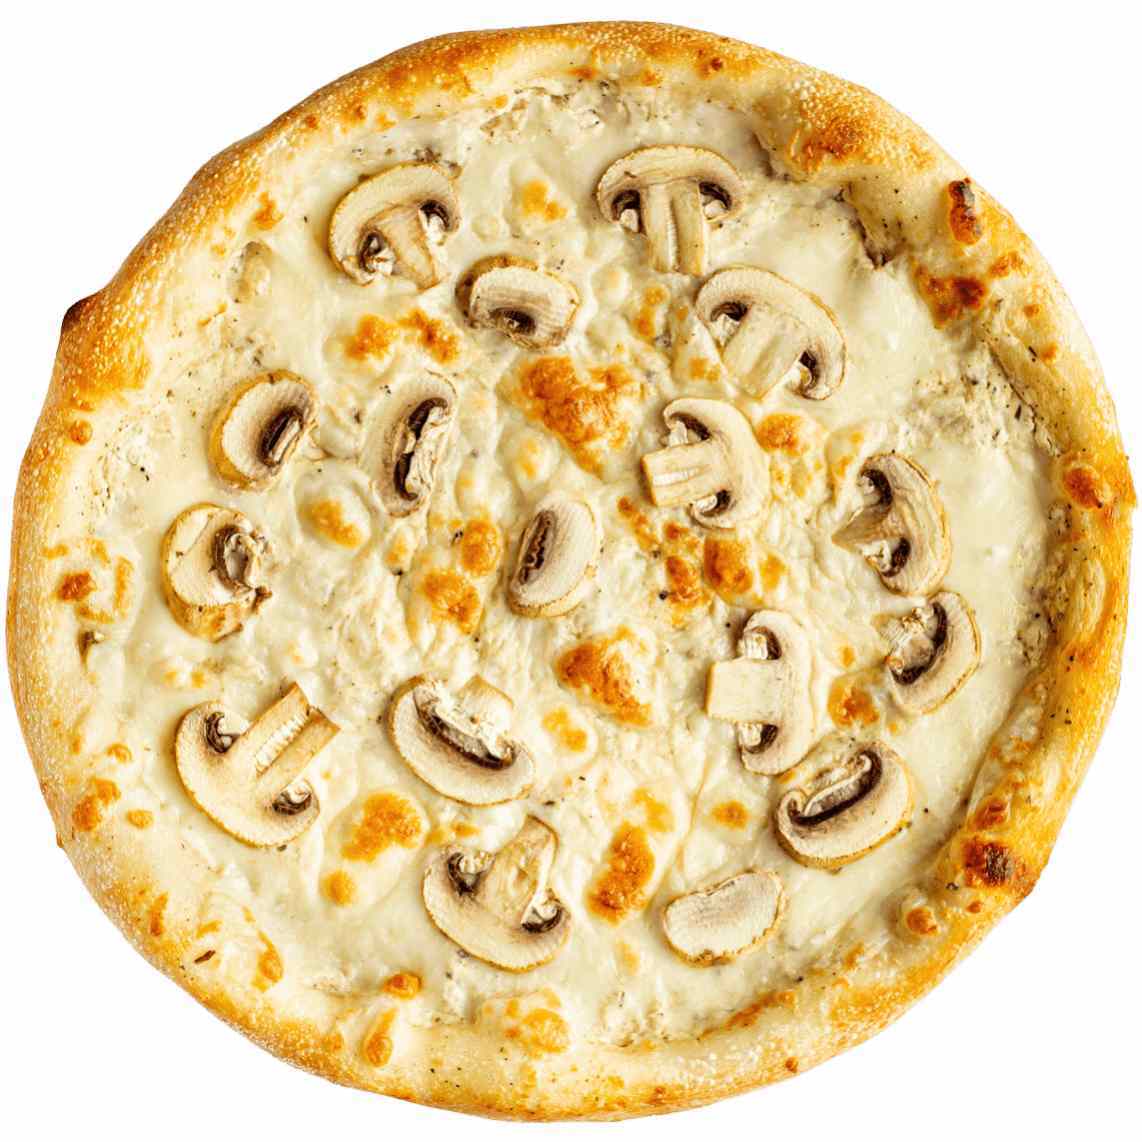 грибная пицца со сливочным соусом рецепт фото 67